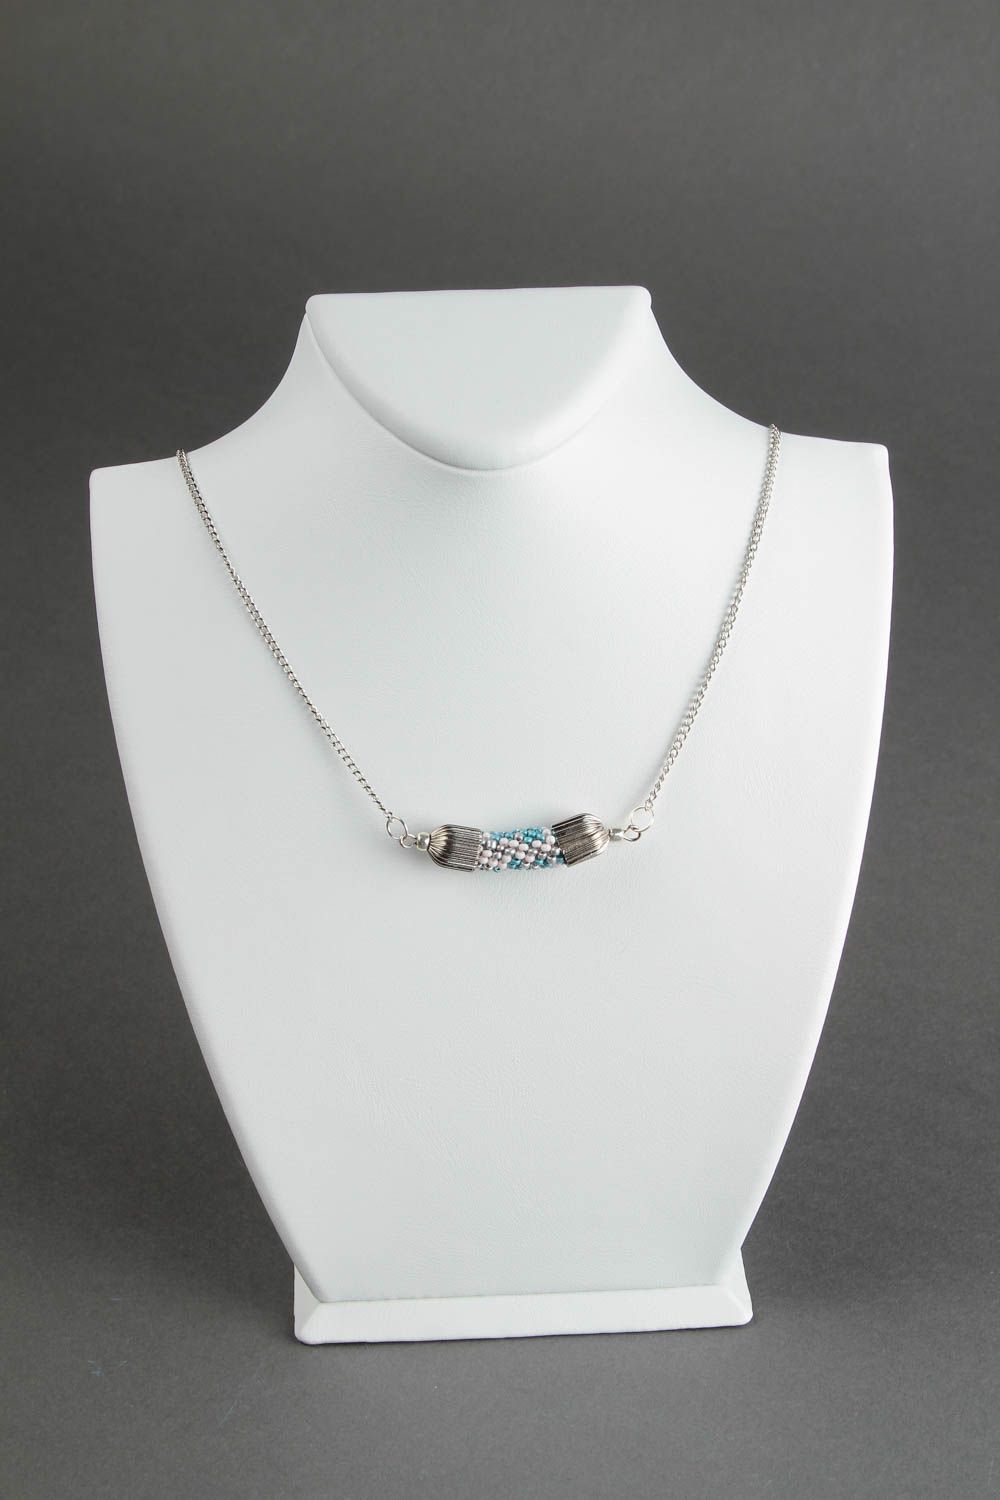 Handmade beautiful beaded necklace stylish elegant necklace female jewelry photo 1